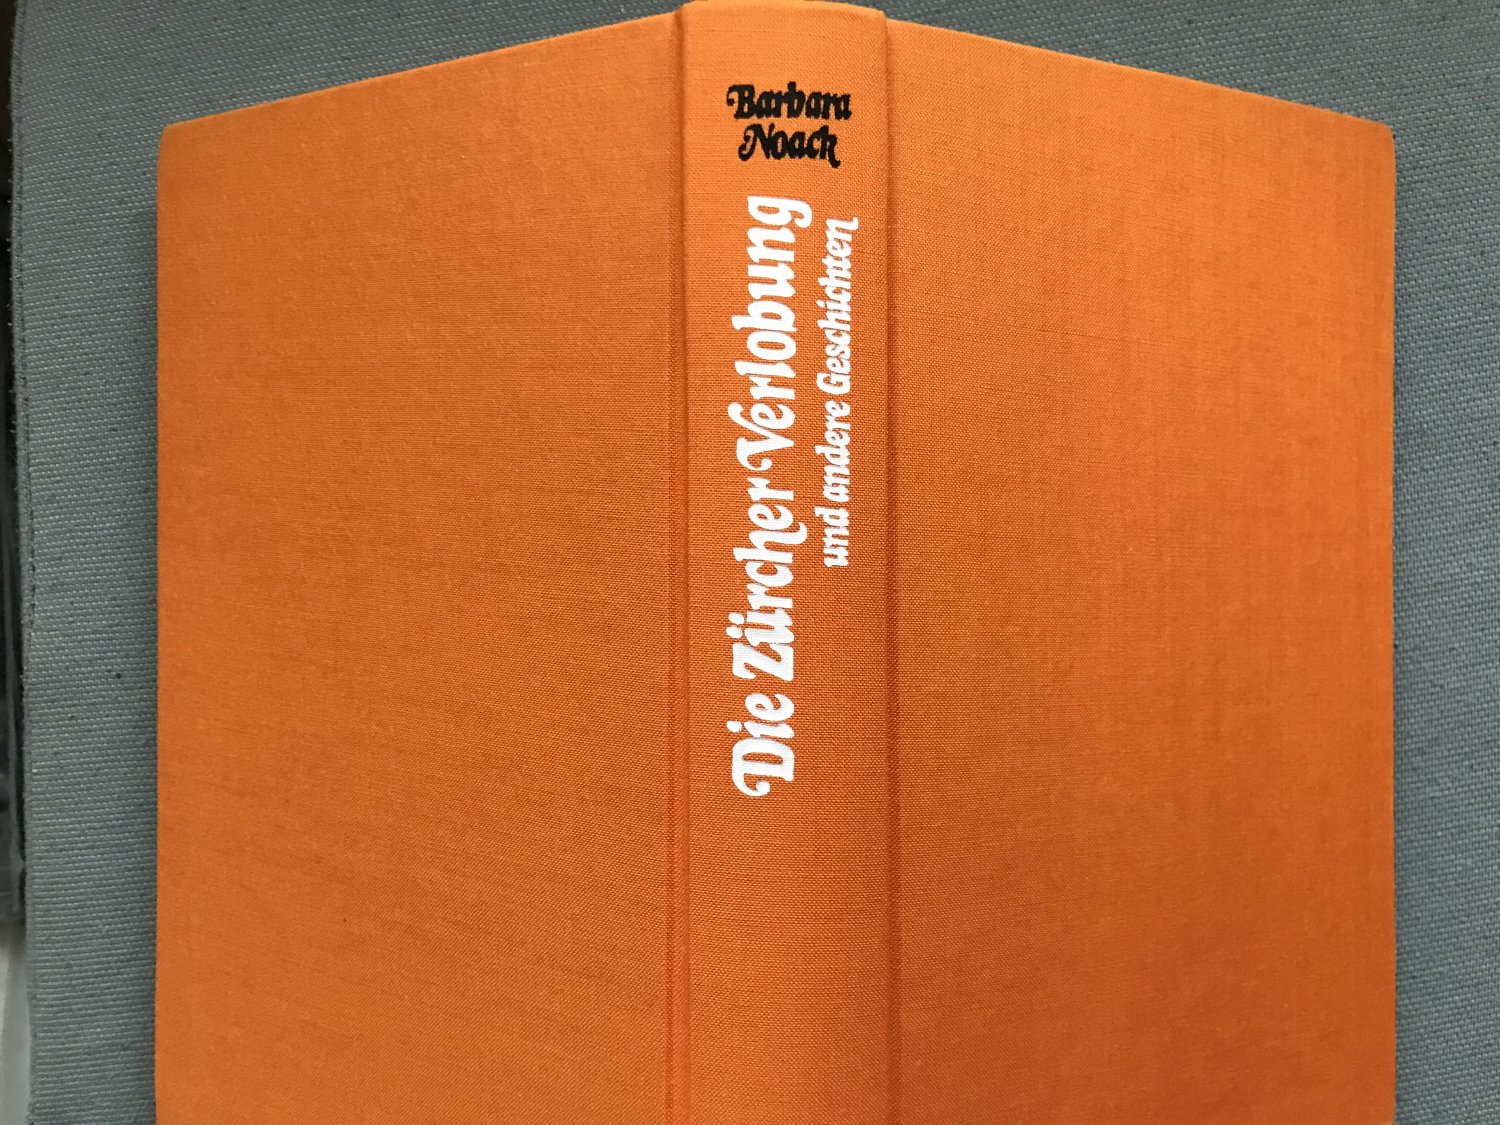 Die Zürcher Verlobung und andere Geschichten“ (Barbara Noack) – Buch  gebraucht kaufen – A02yX6SR01ZZV